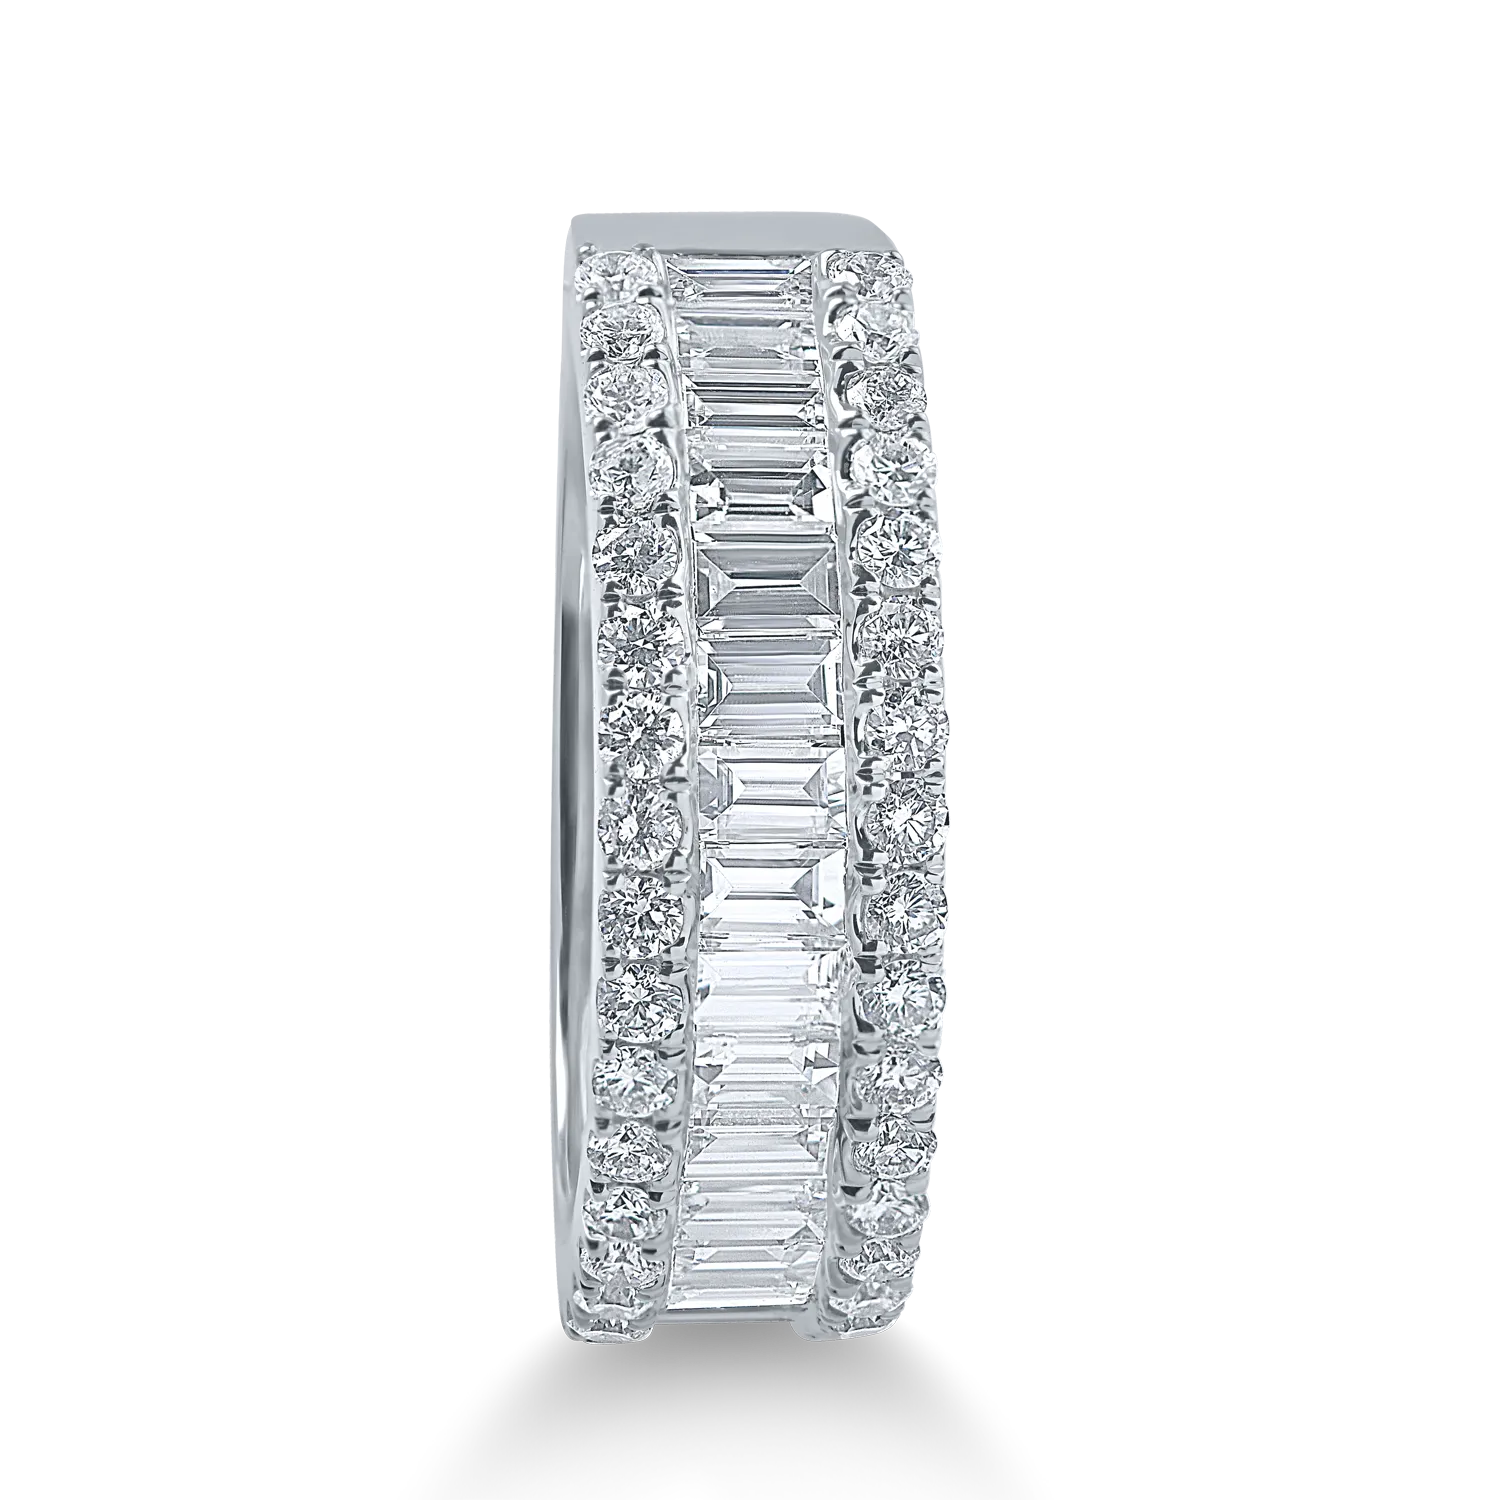 Fehérarany mikrobeágyazó gyűrű 1.3ct gyémántokkal